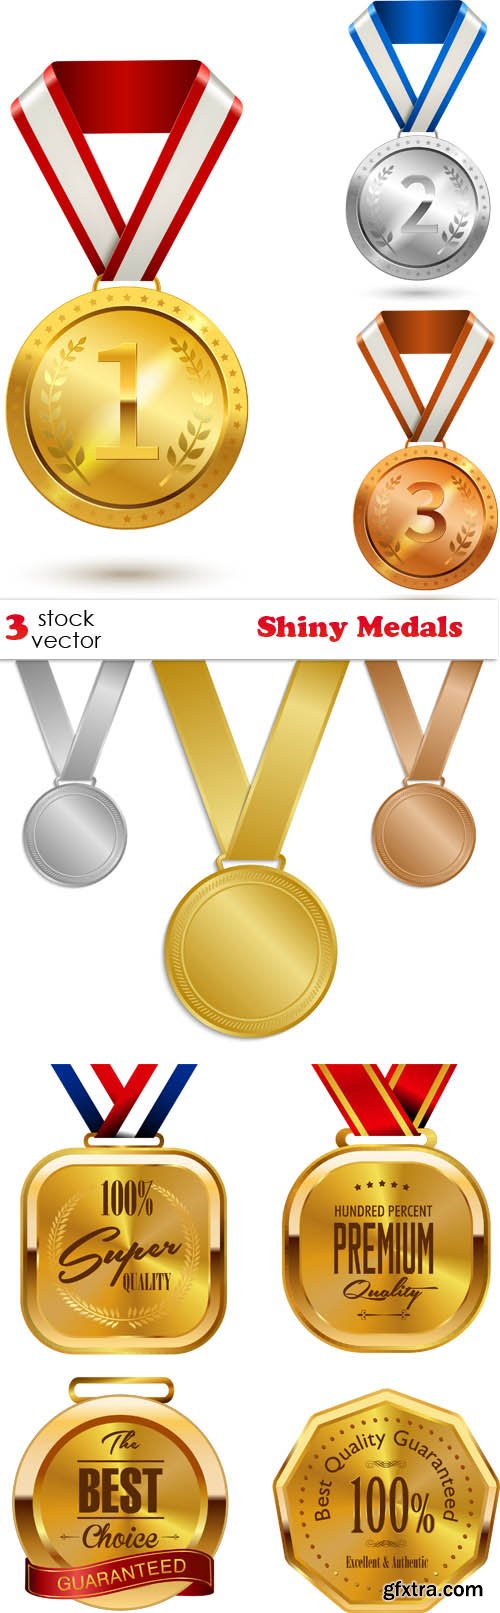 Vectors - Shiny Medals